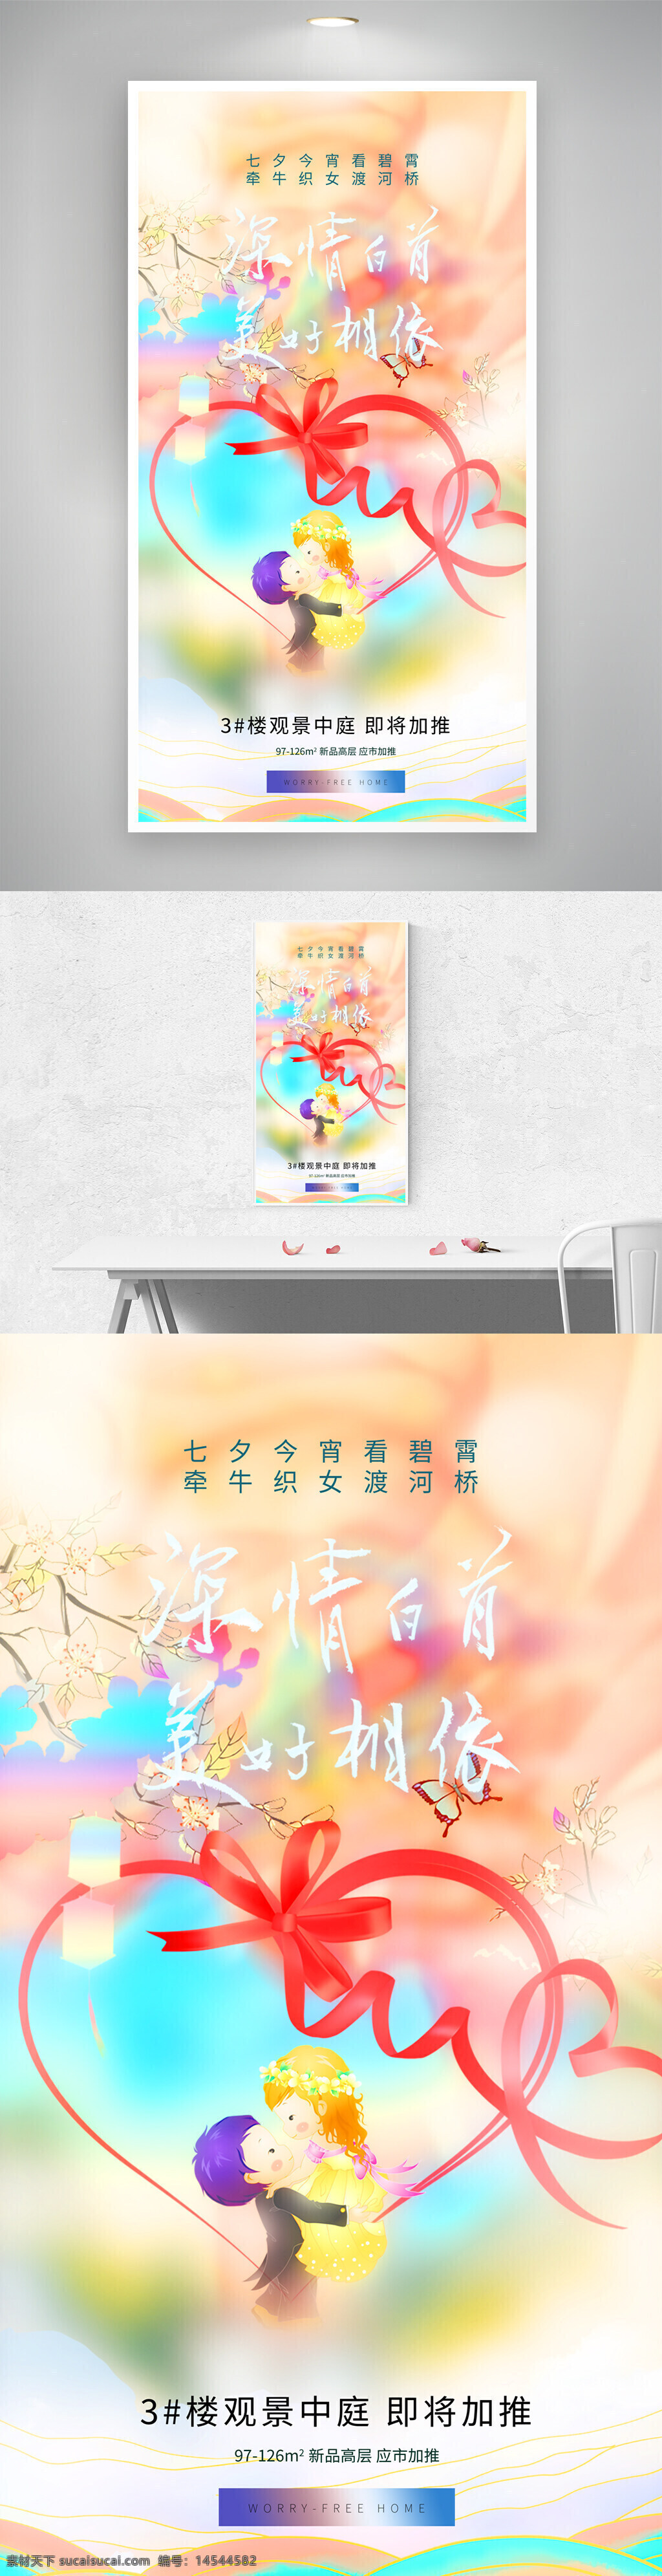 七夕情人节 卡通插画 地产广告 节日海报 传统节日 浪漫七夕 花鸟